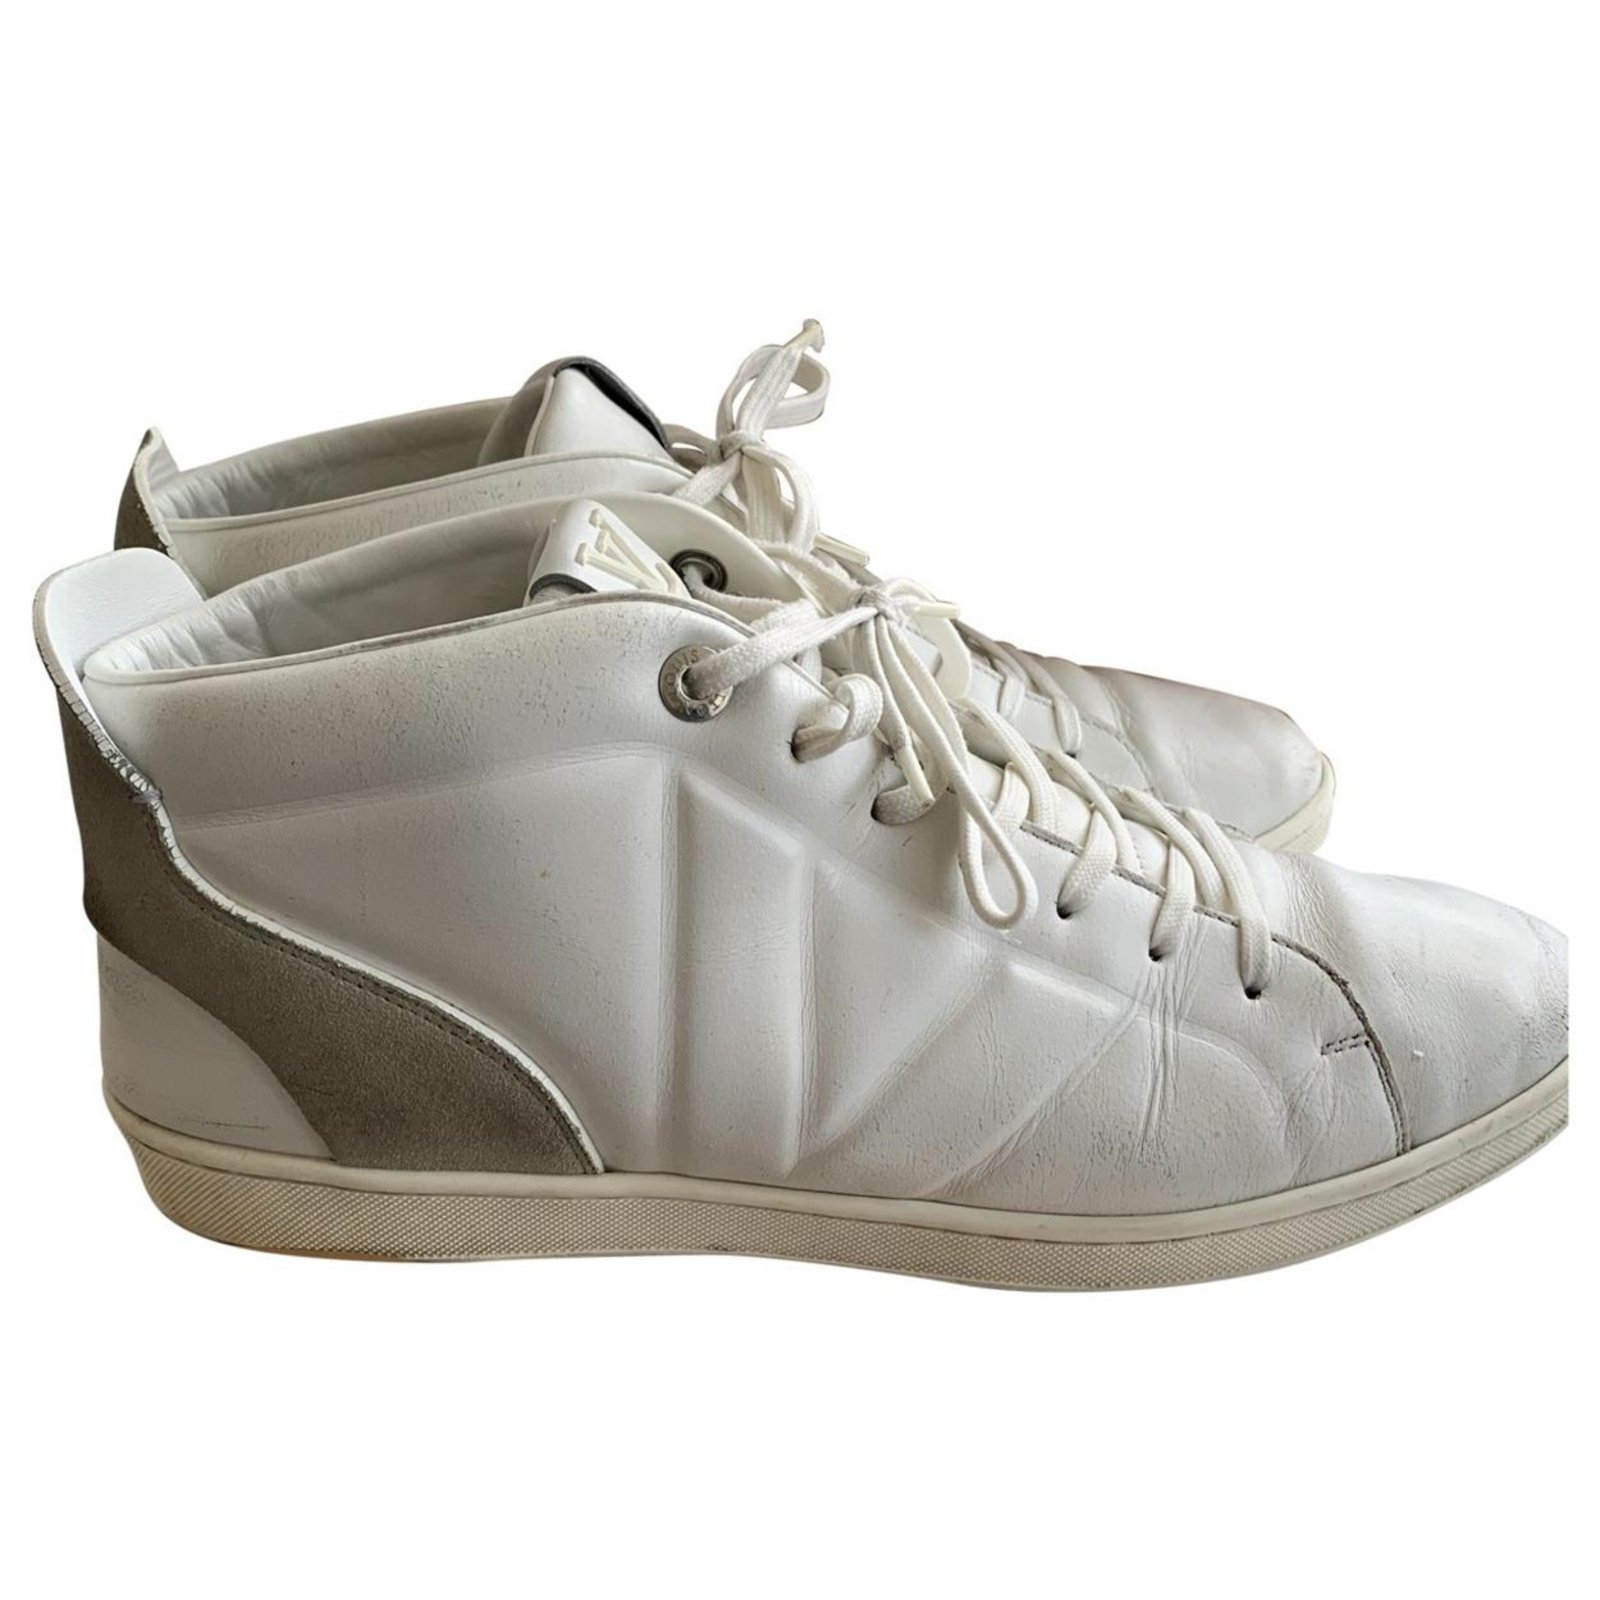 LOUIS VUITTON Paire de baskets / sneakers en cuir blanc …